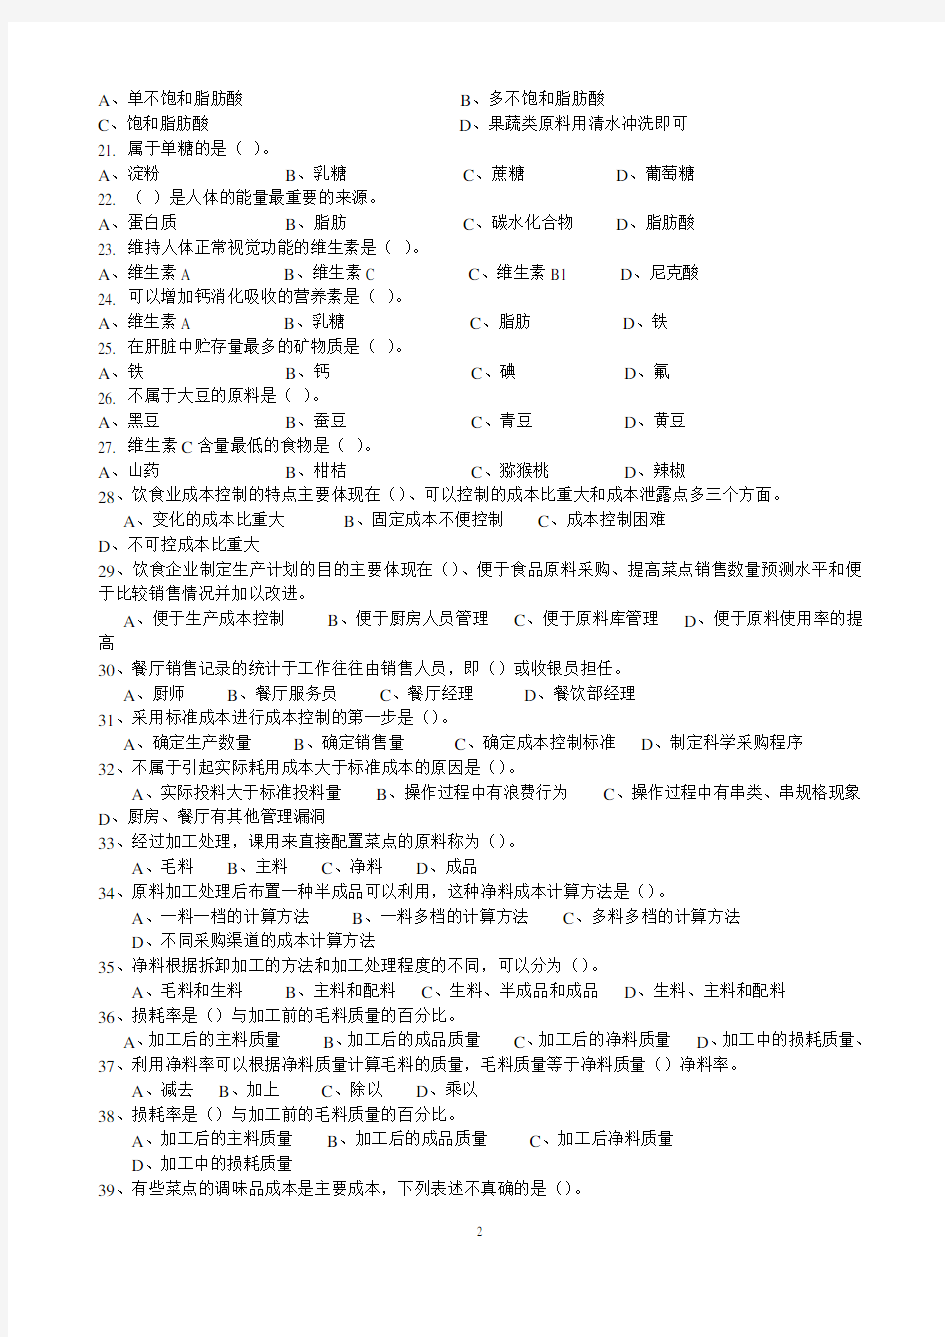 中式烹调师中级理论知识试卷(四)